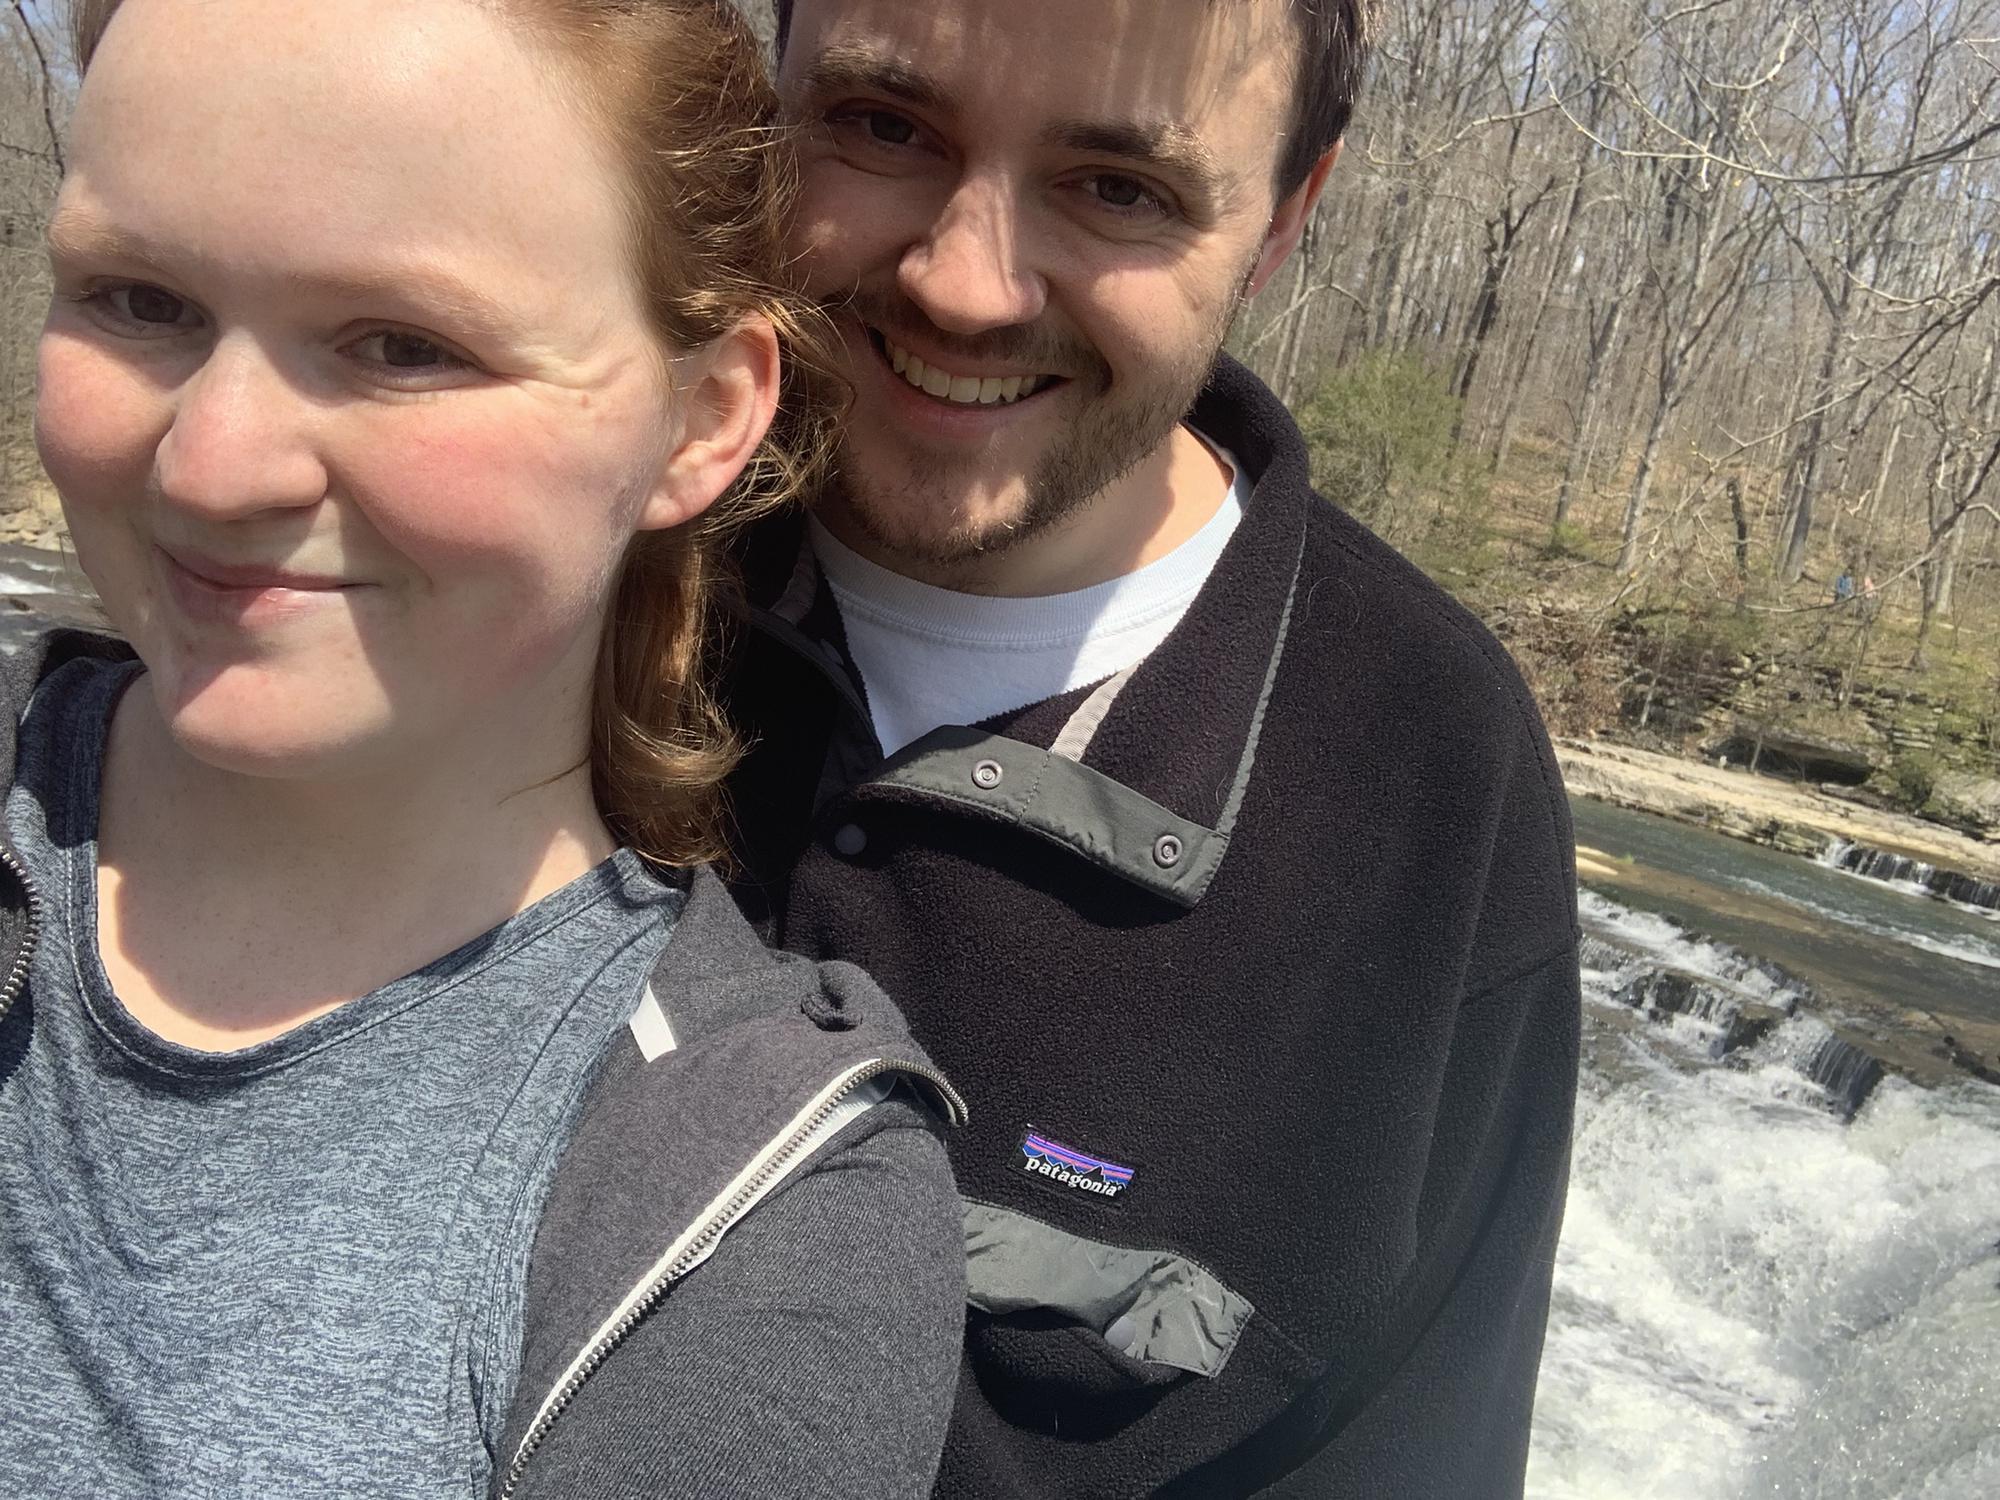 Taking a hike at beautiful Cataract Falls near DePauw University! April 2020